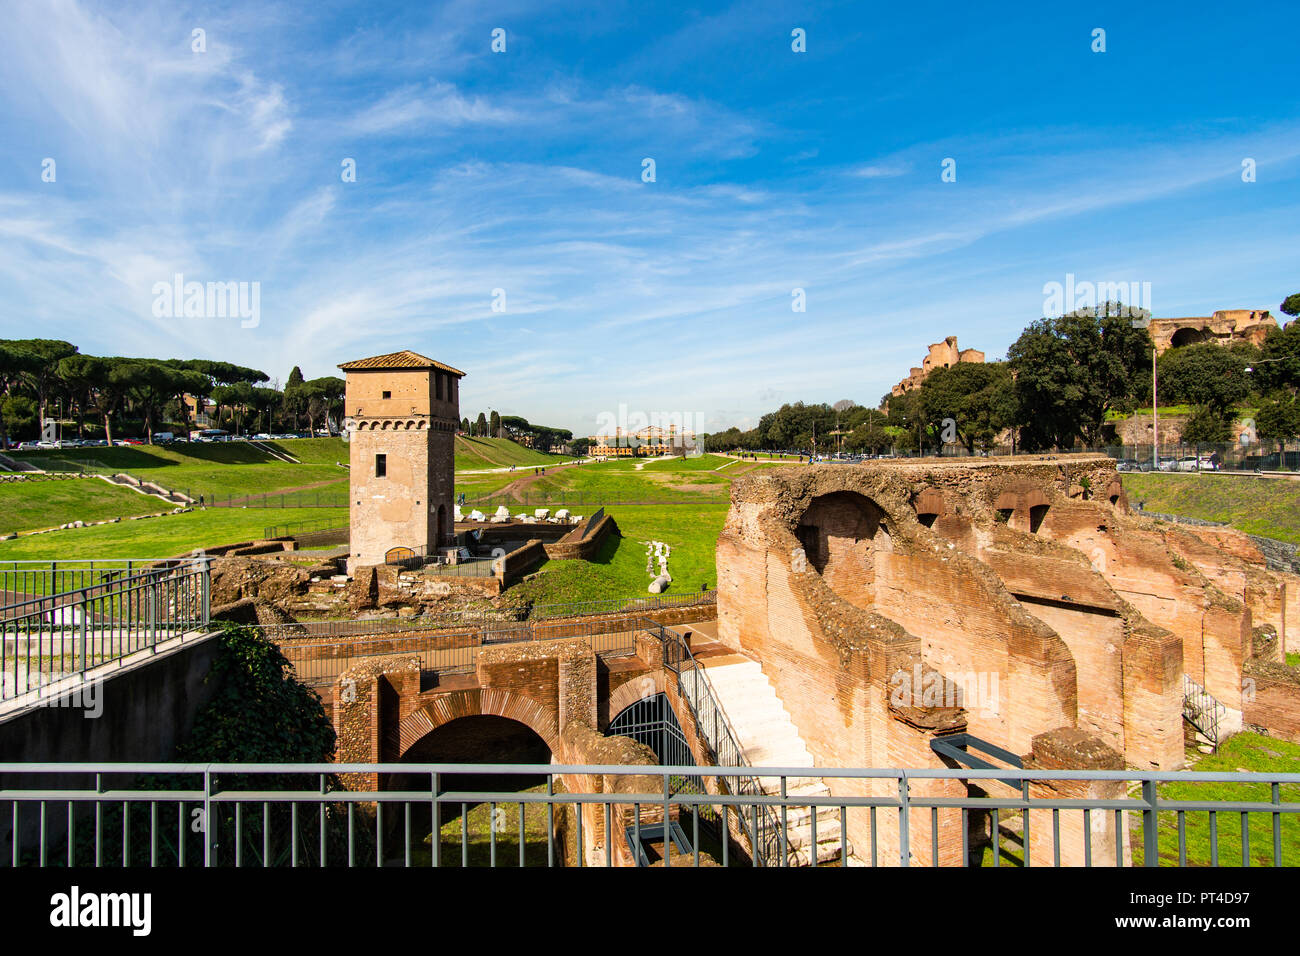 Le Circus Maximus, une ancienne course de char romain et le plus grand stade de divertissement à Rome, Italie Banque D'Images